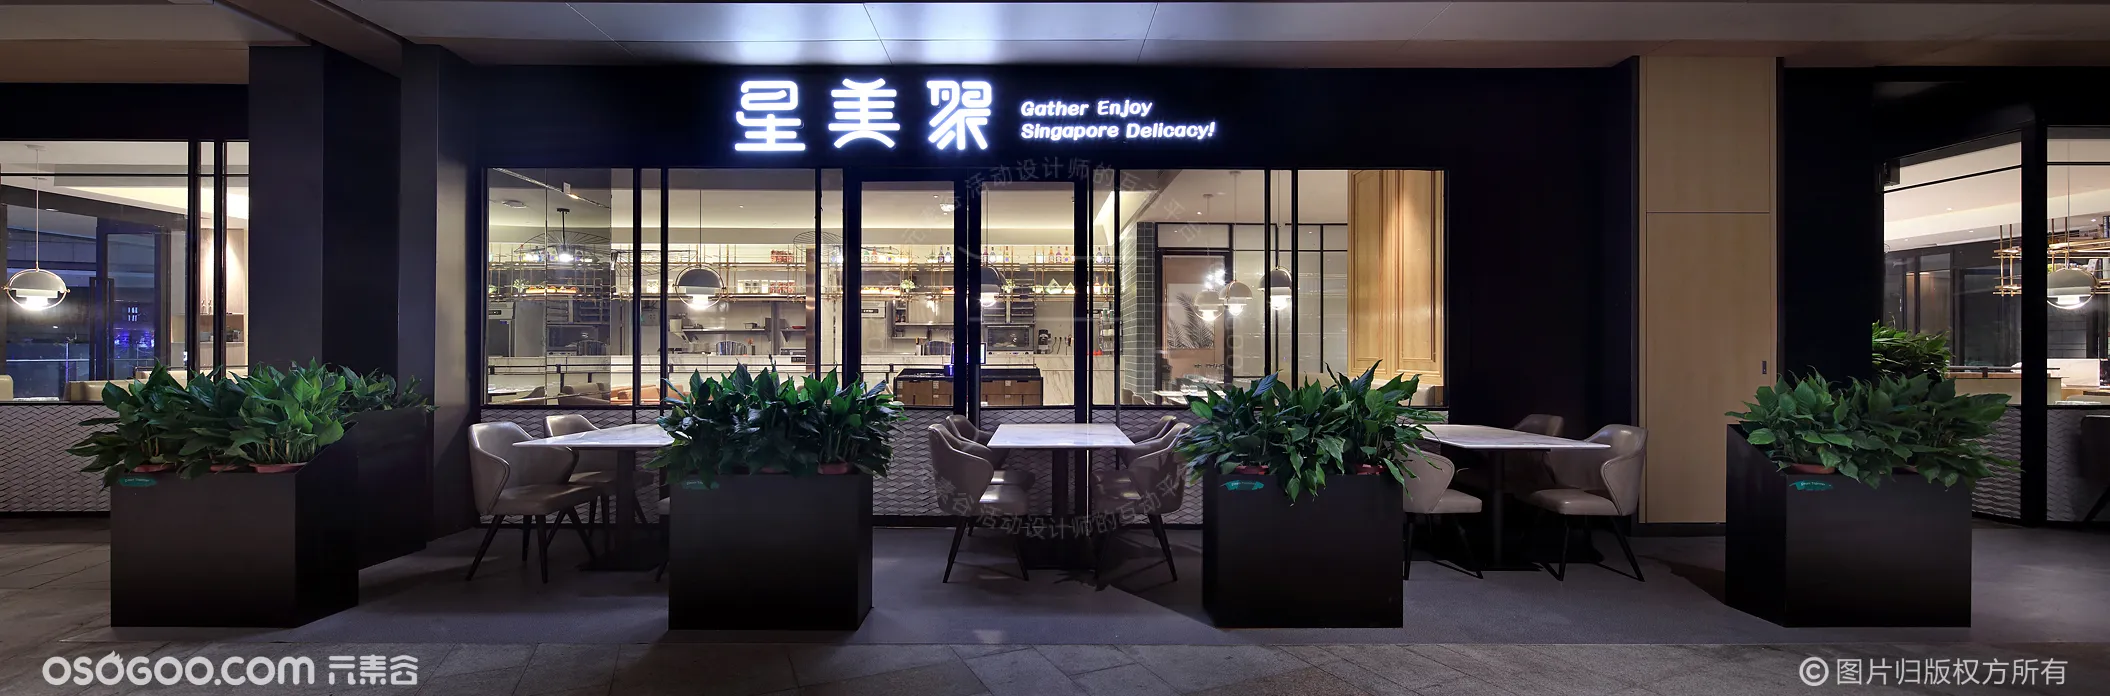 餐饮品牌全案设计 星美聚 新加坡风味餐厅